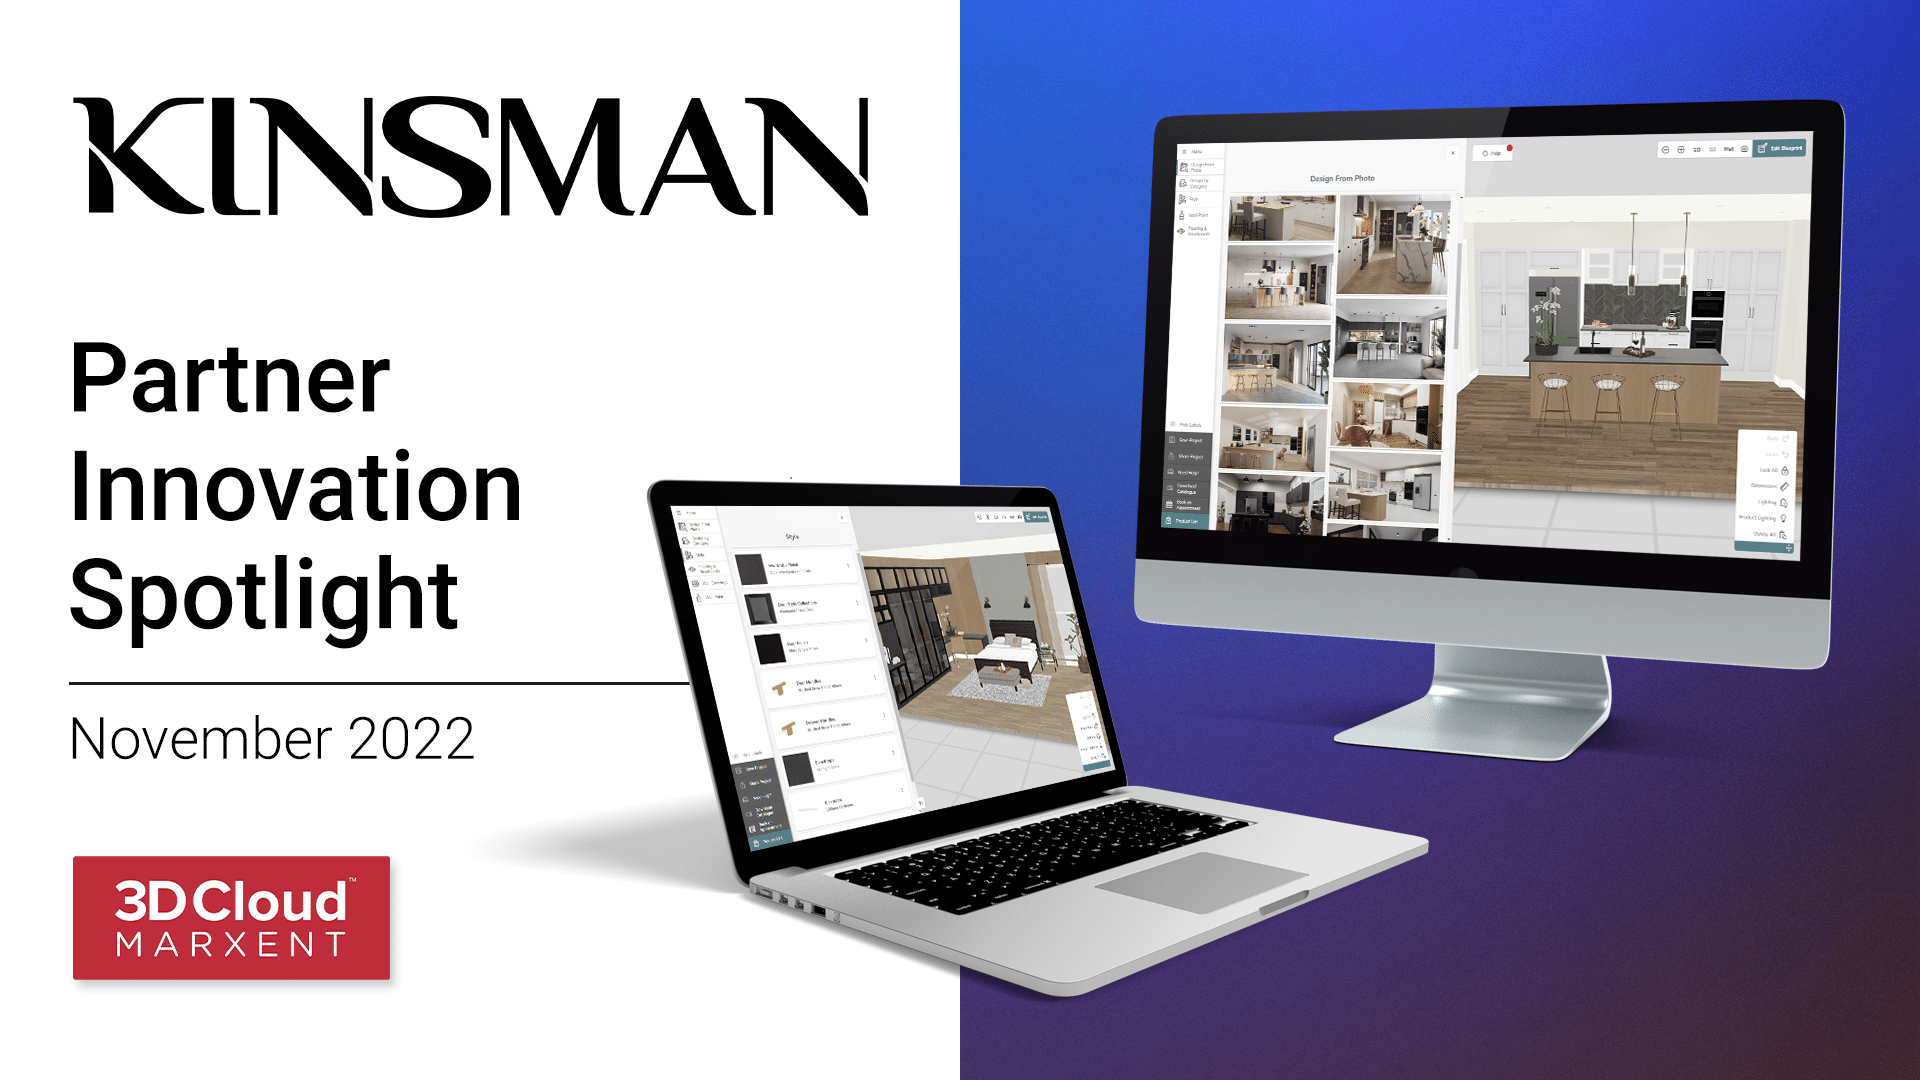 Kinsman Partner Innovation Spotlight